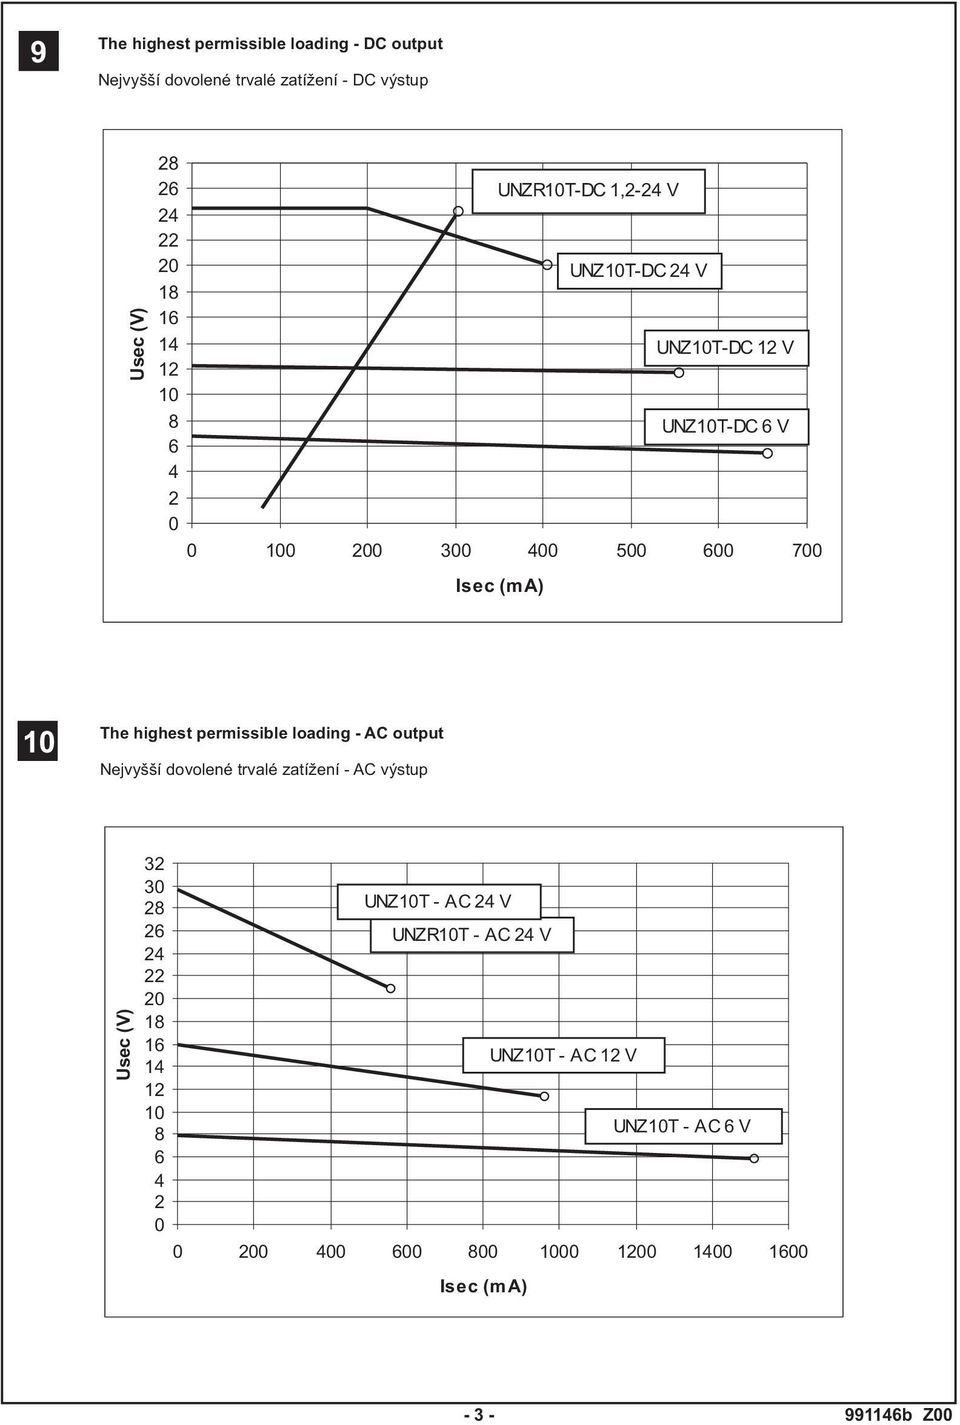 permissible loading - AC output Nejvyšší dovolené trvalé zatí ení - AC výstup Usec (V) 32 30 28 26 24 22 20 18 16 14 12 10 8 6 4 2